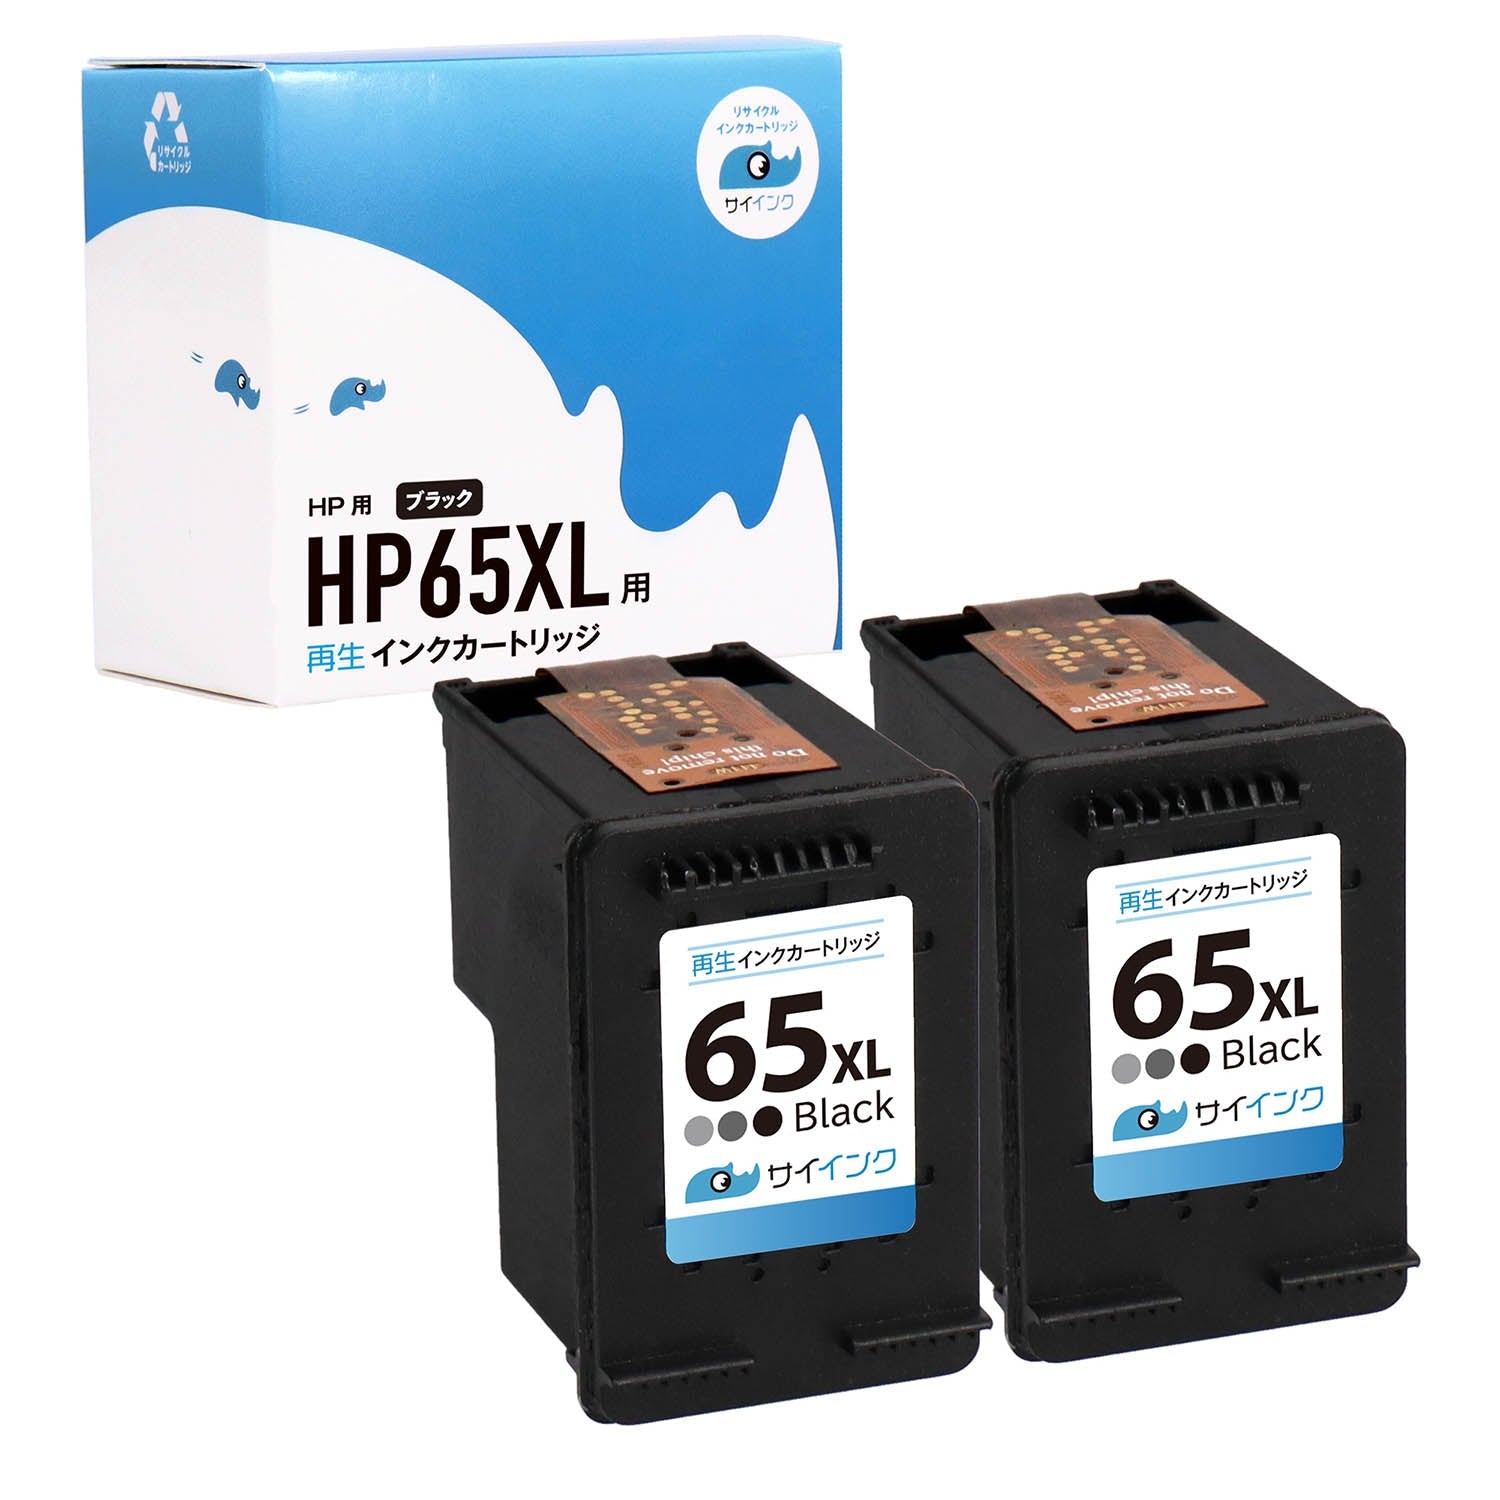 HP用 HP 65XL リサイクルインク ブラック 増量版